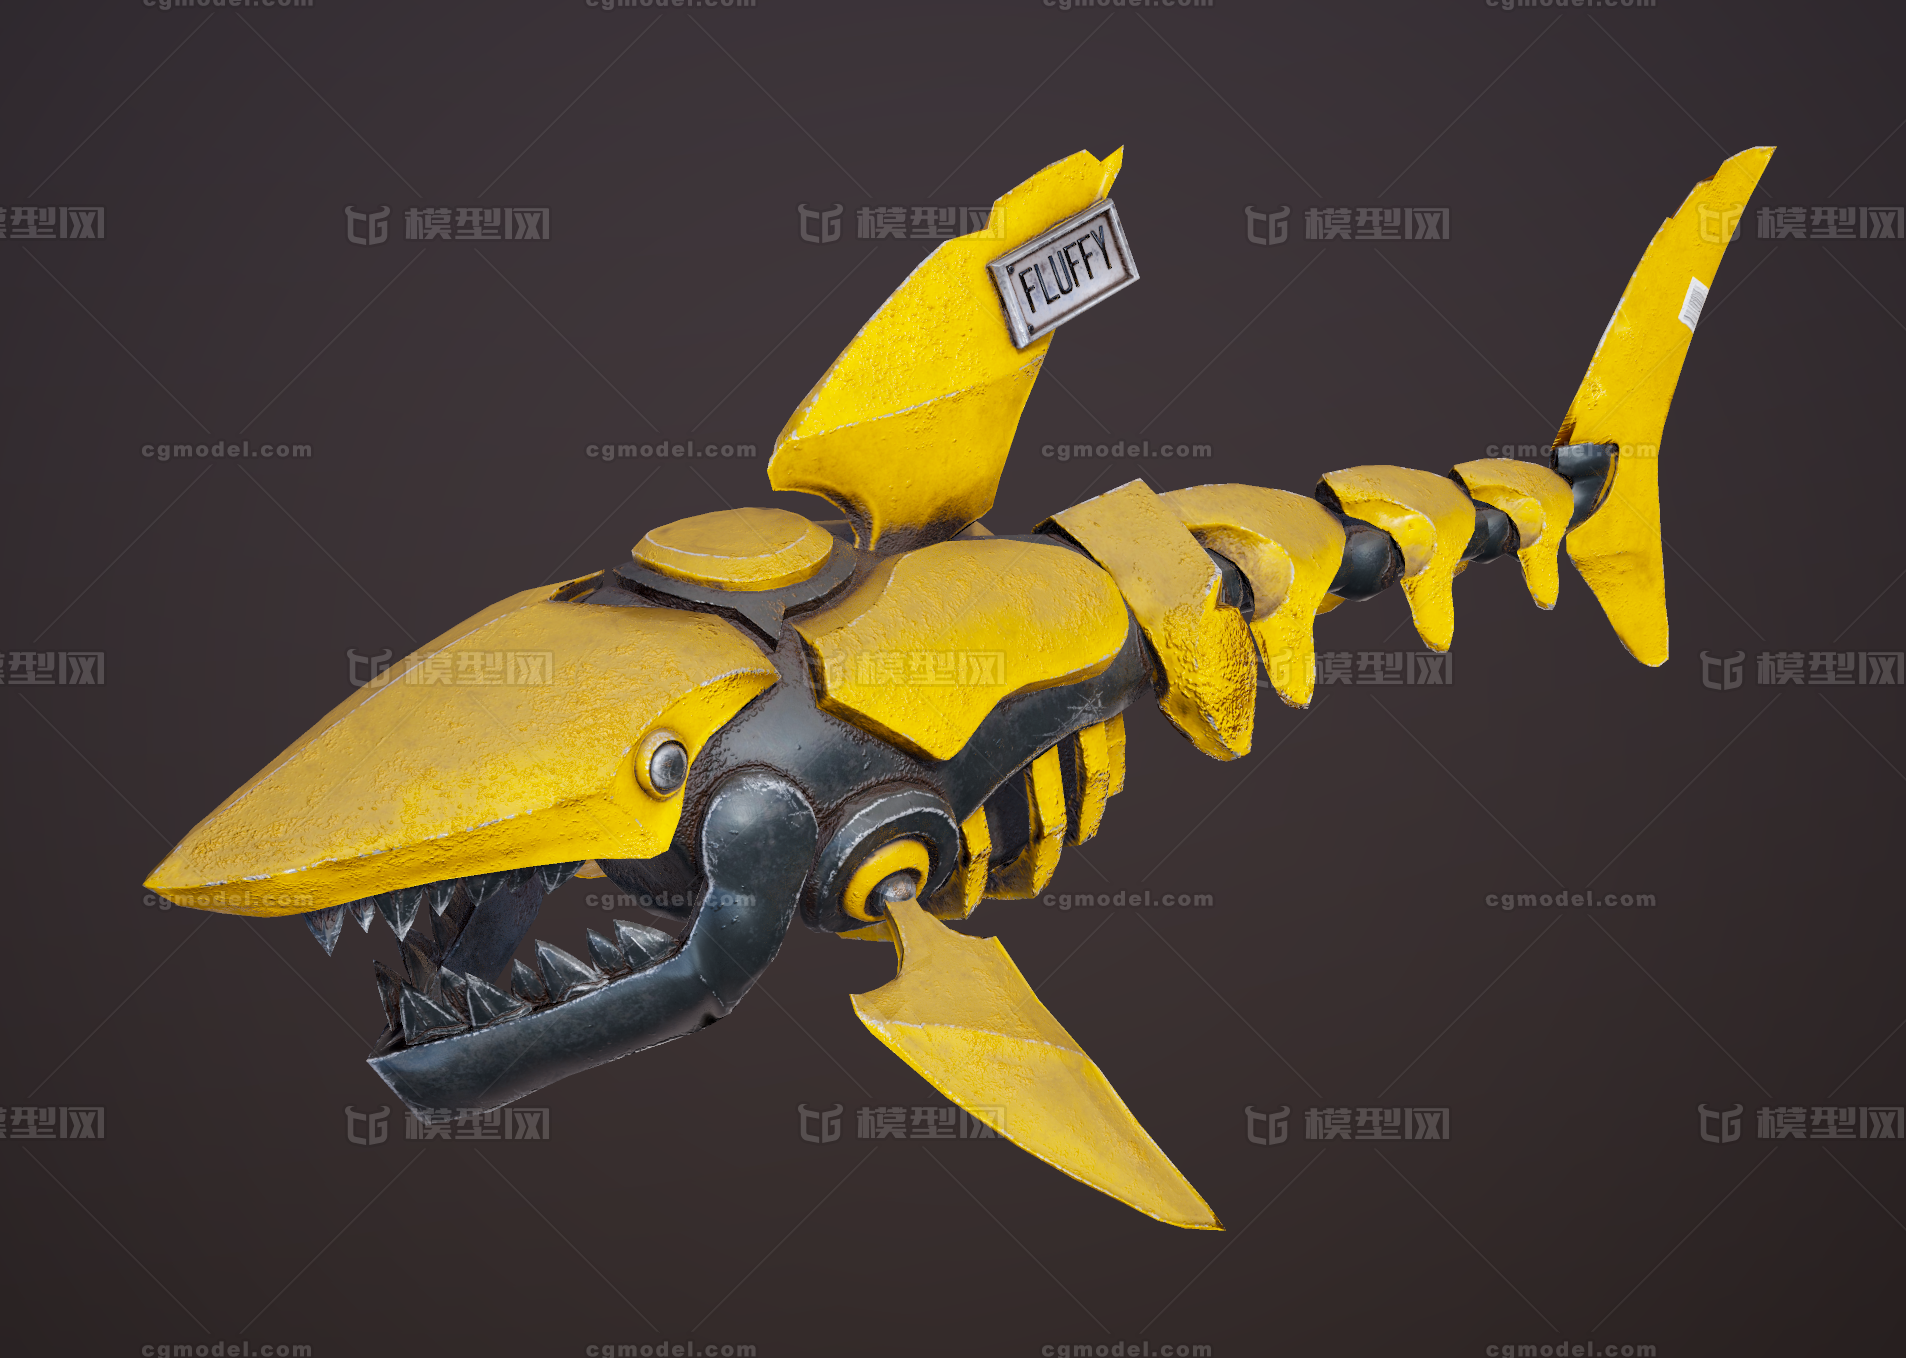 pbr次世代 科幻鲨鱼 机甲 机械鲨鱼 机器人 机械动物 机器动物 海洋